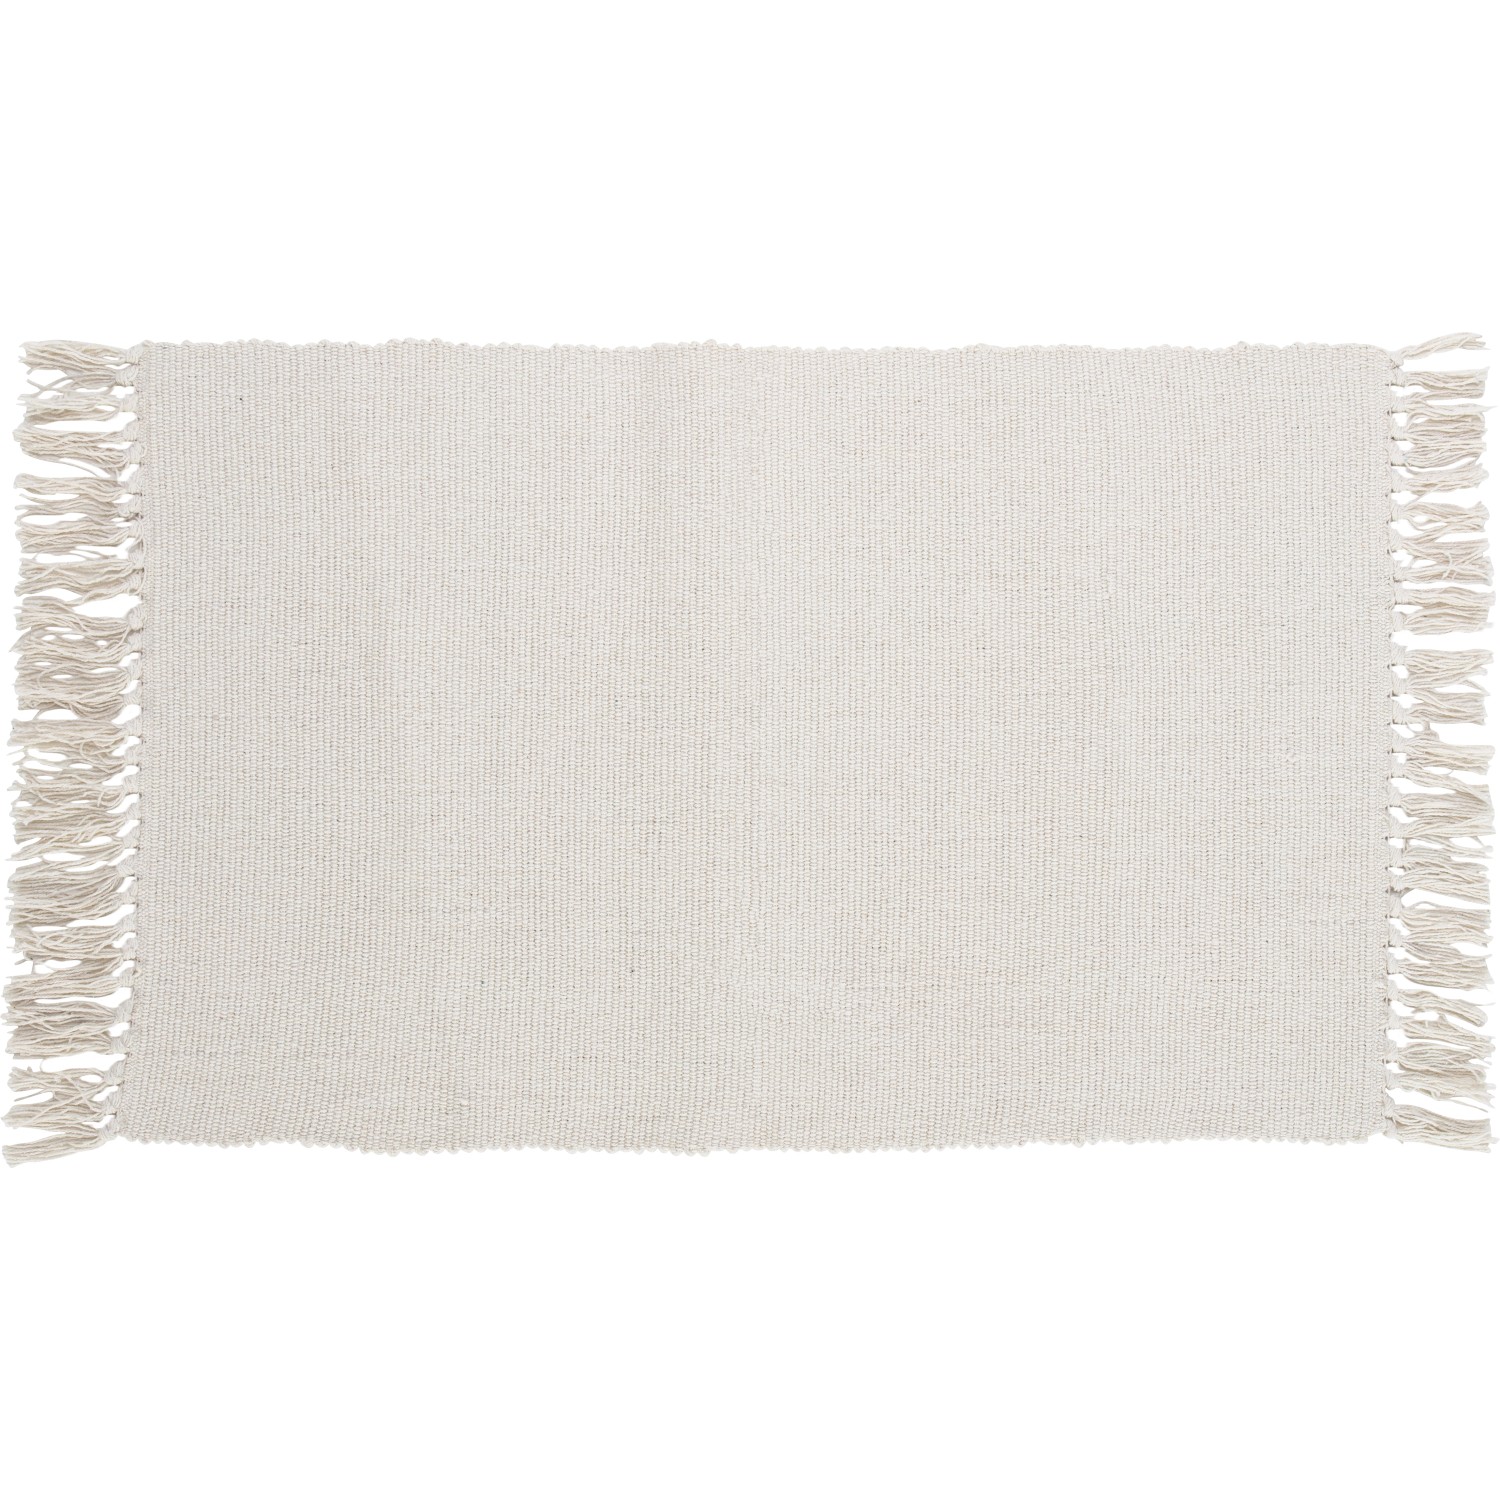 OBI Baumwoll Teppich Uni Weiß 50 x 80 cm von -